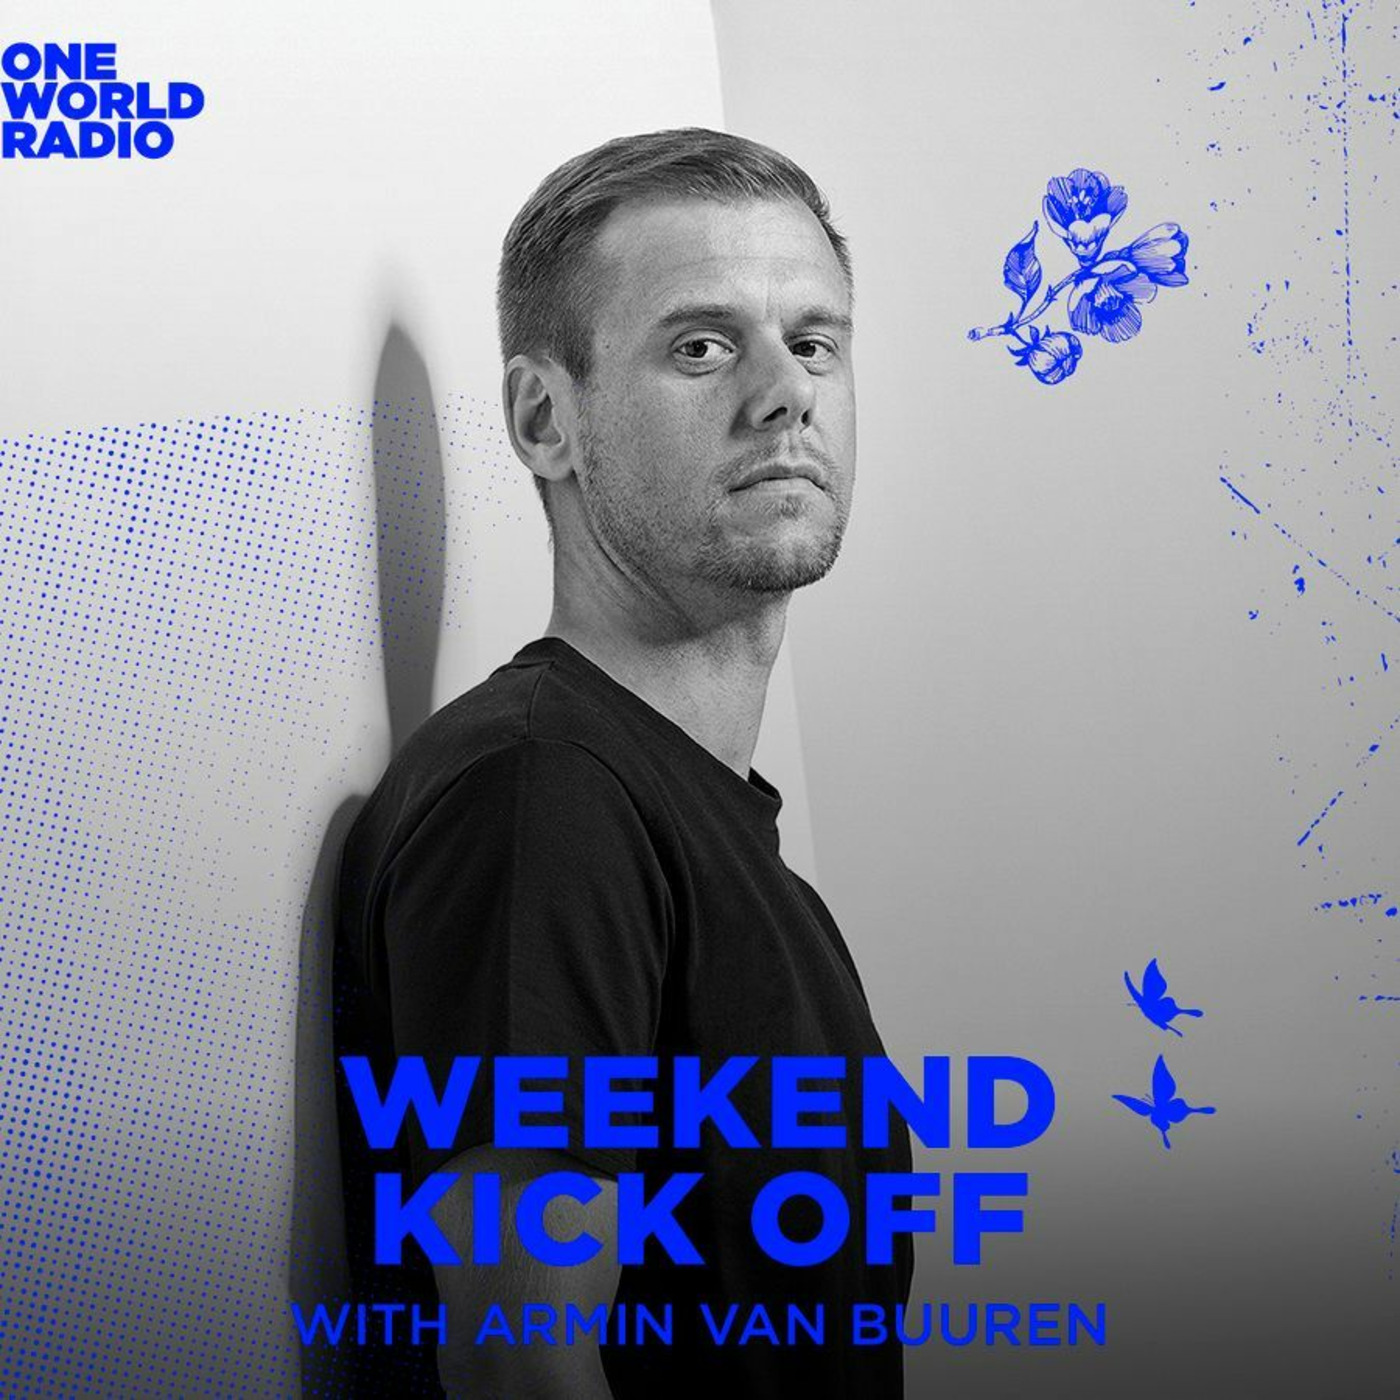 Armin van Buuren - Tomorrowland One World Radio Weekend Kick Off (27.09.2019)